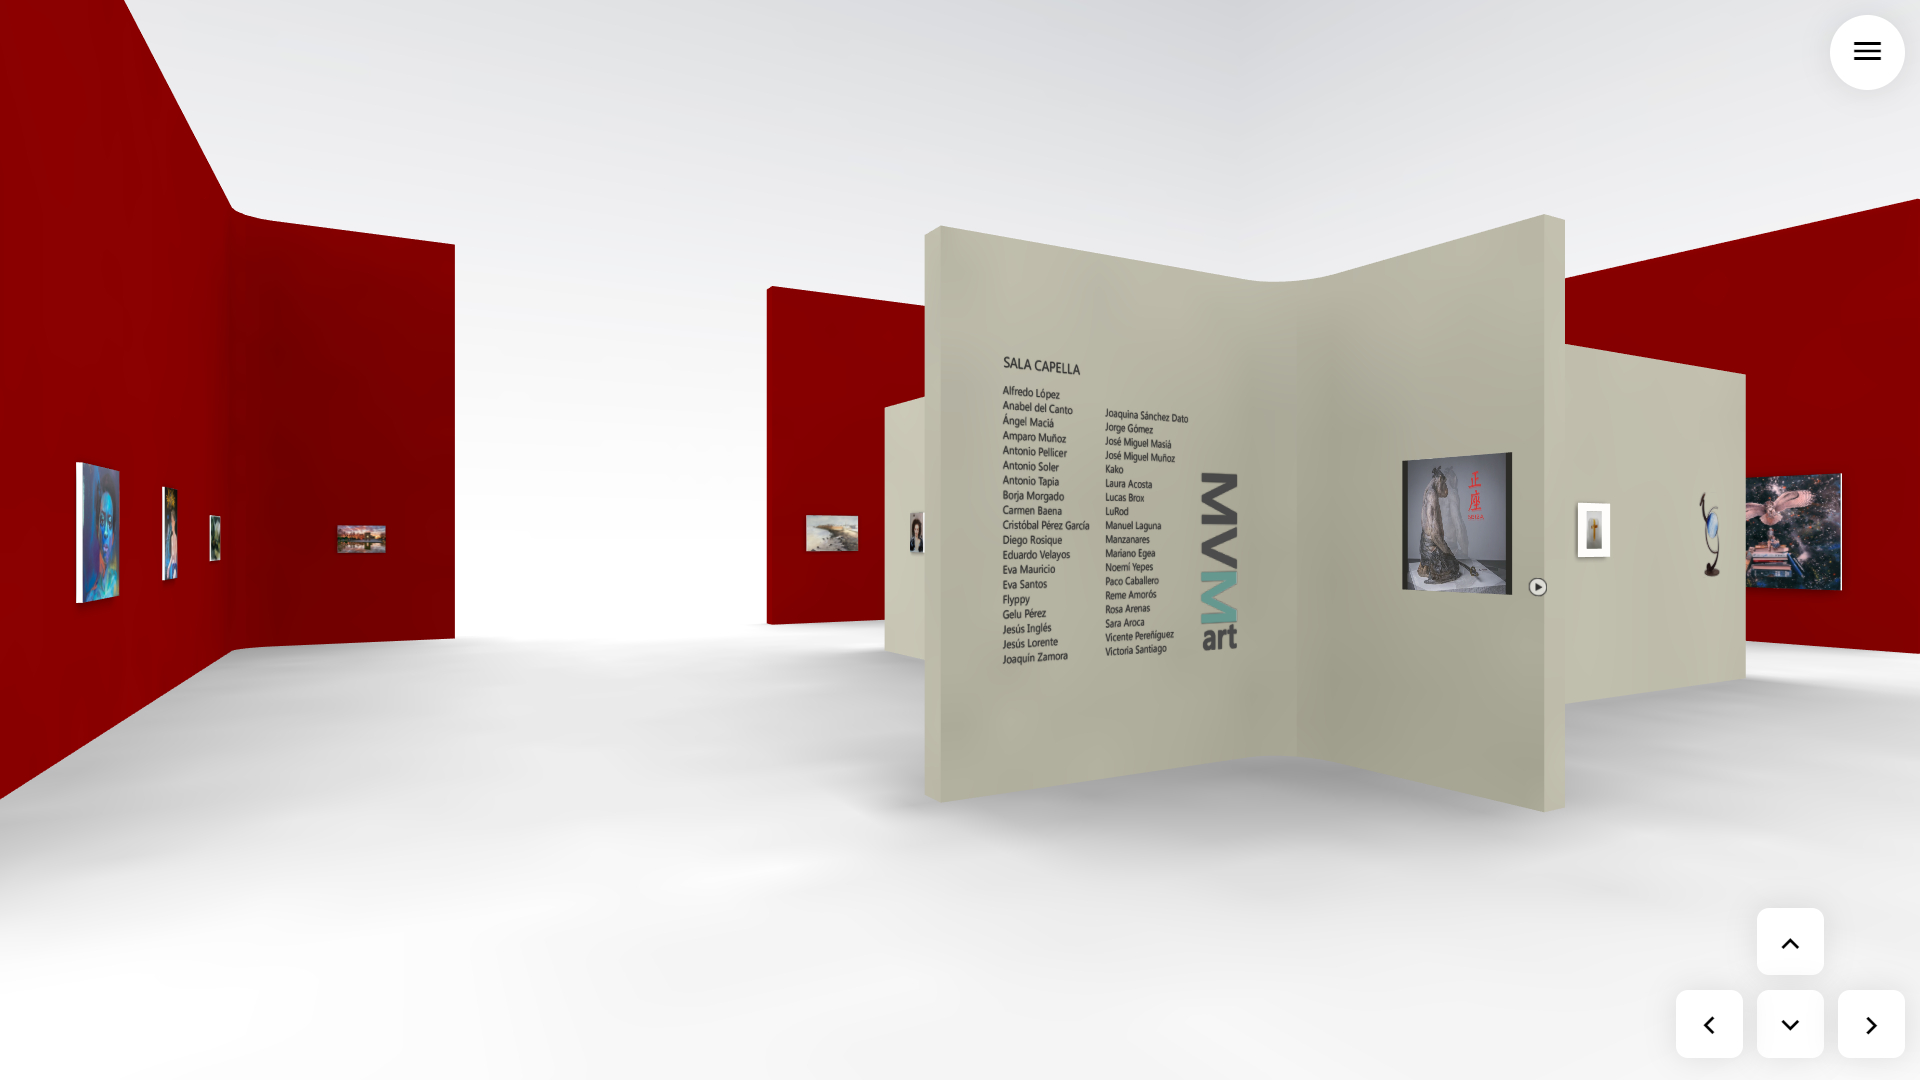 Captura de la Sala Capella de la exposición virtual MVM Muestra Virtual Milenium